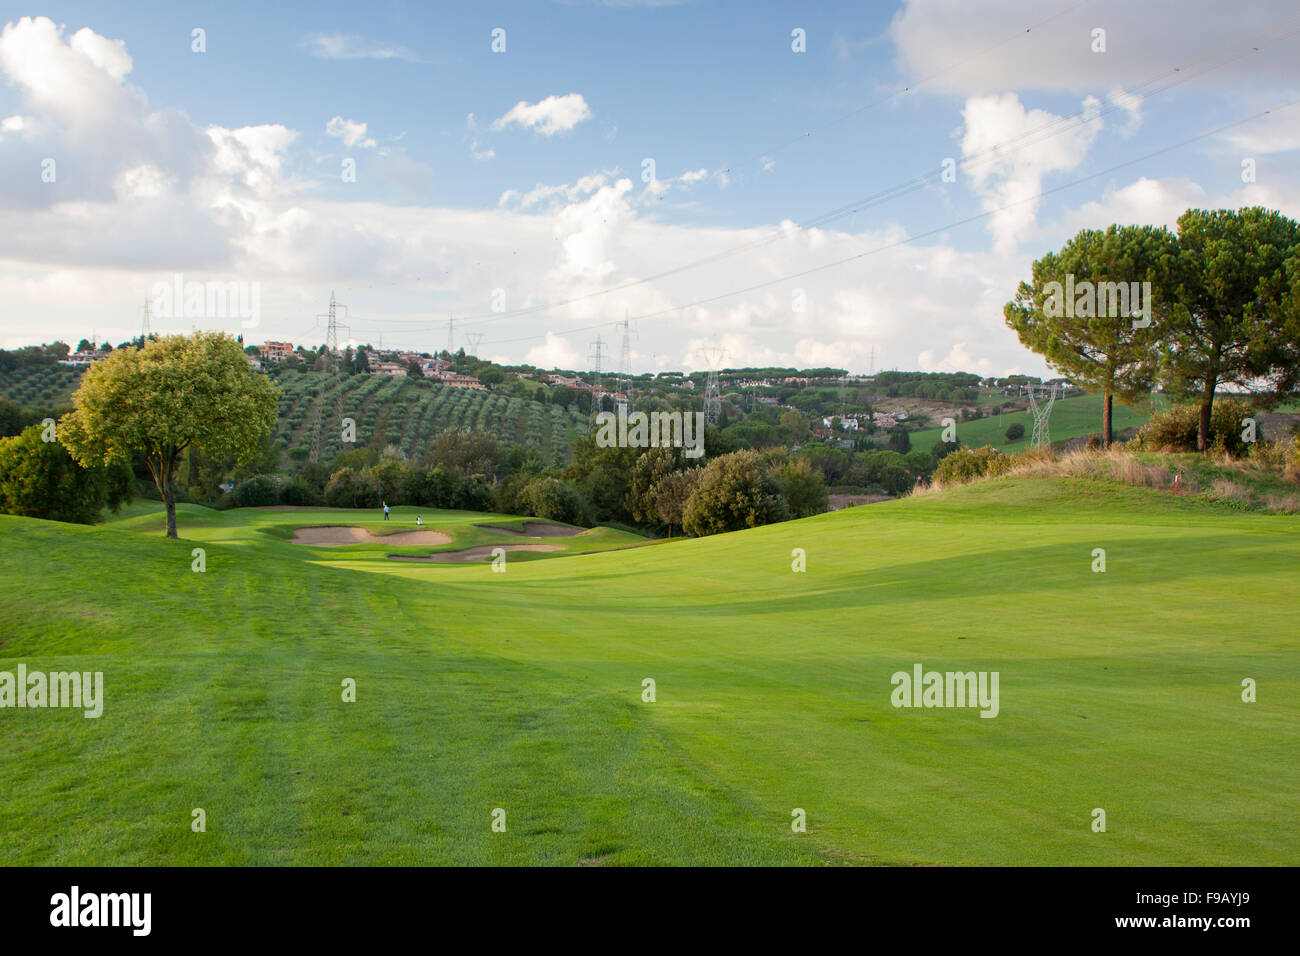 Marco Simone Golf nei pressi di Roma la Ryder Cup 2022 venue Foto Stock